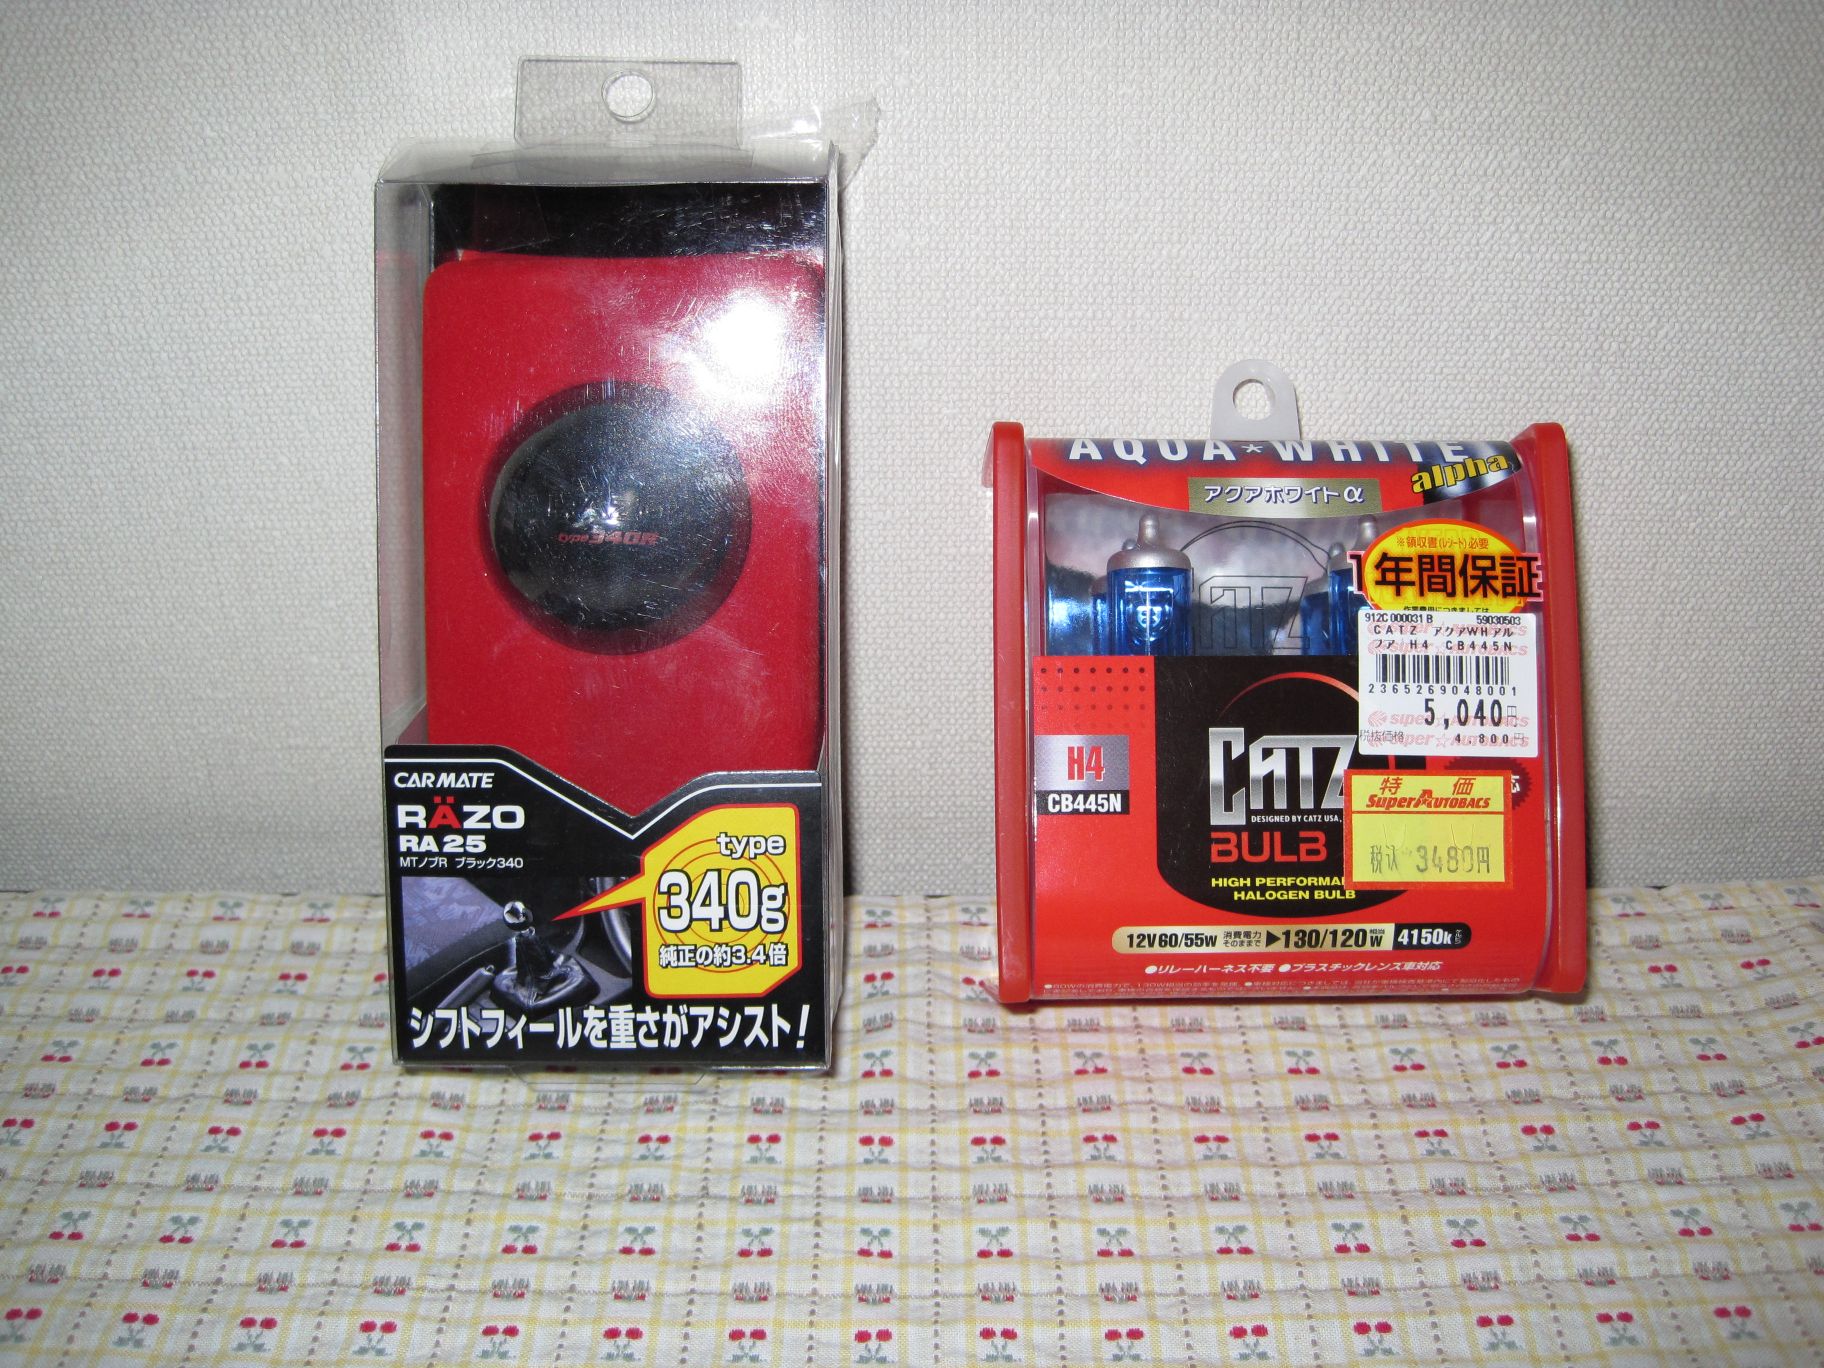 http://www.kitcat.jp/blog/2010/02/01/IMG_0047.JPG